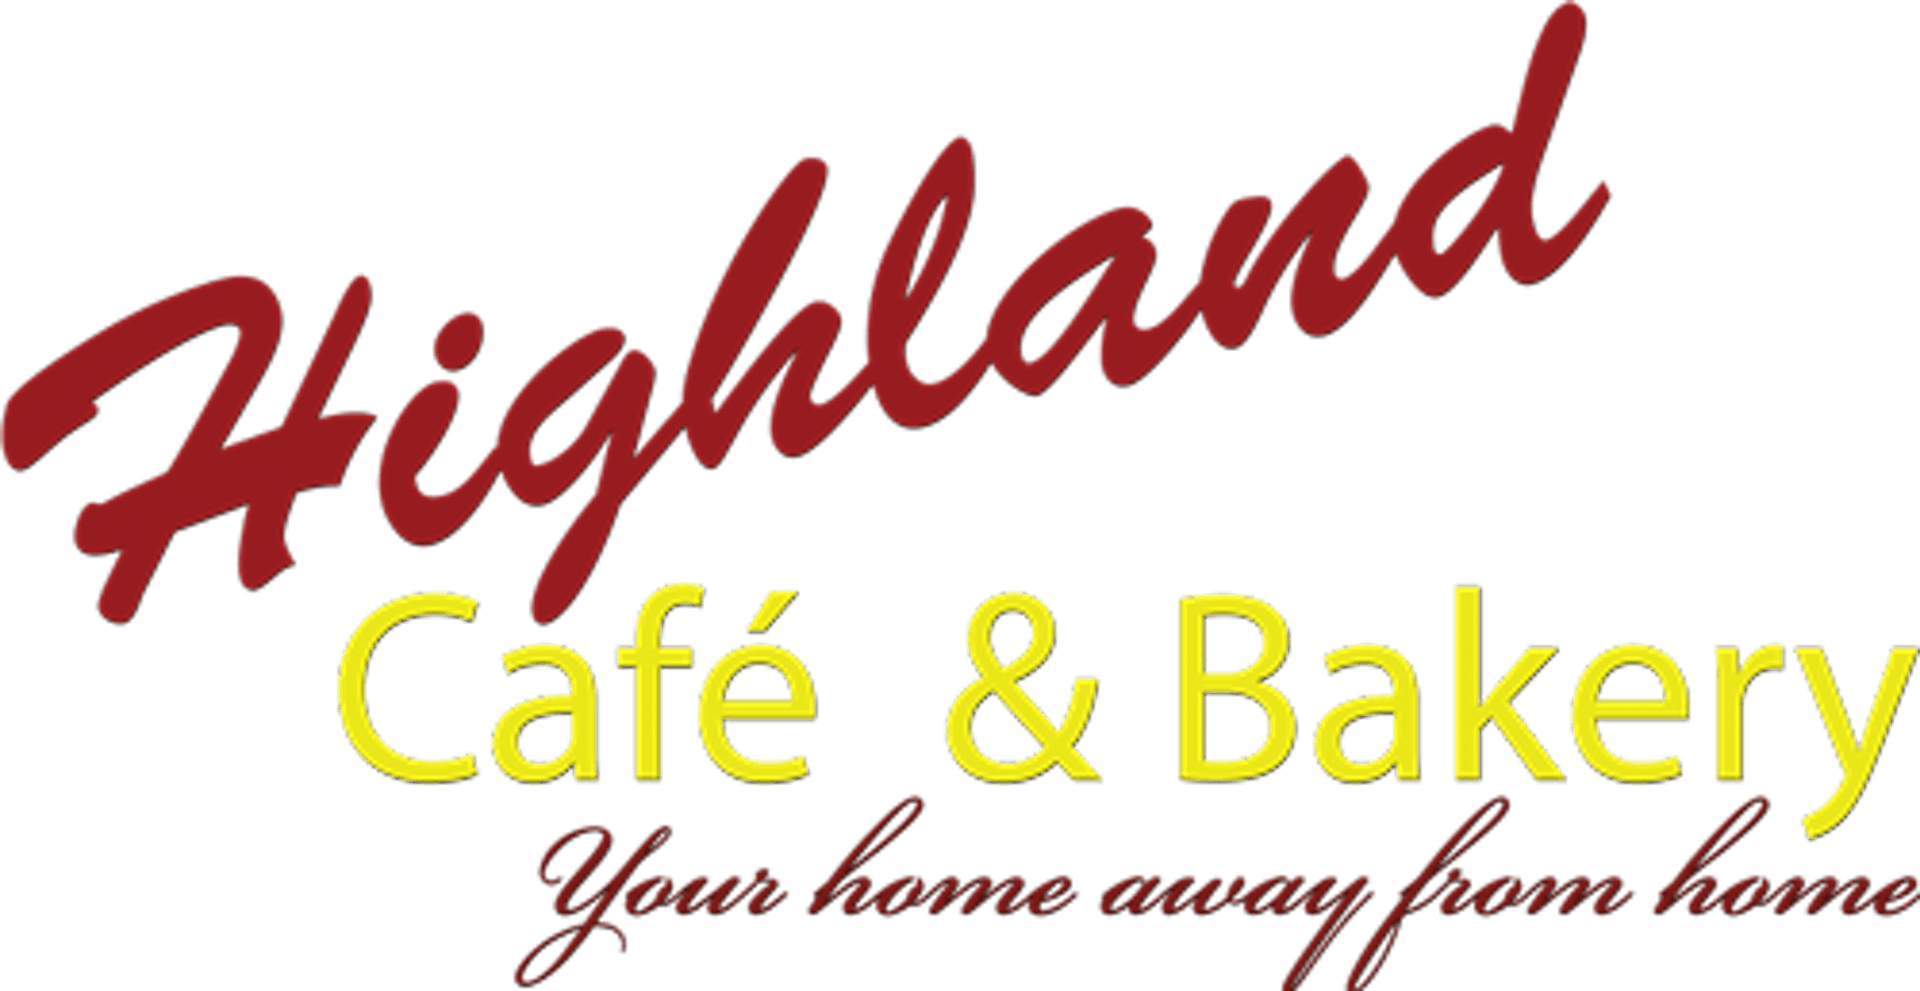 HIGHLAND CAFE AND BAKERY